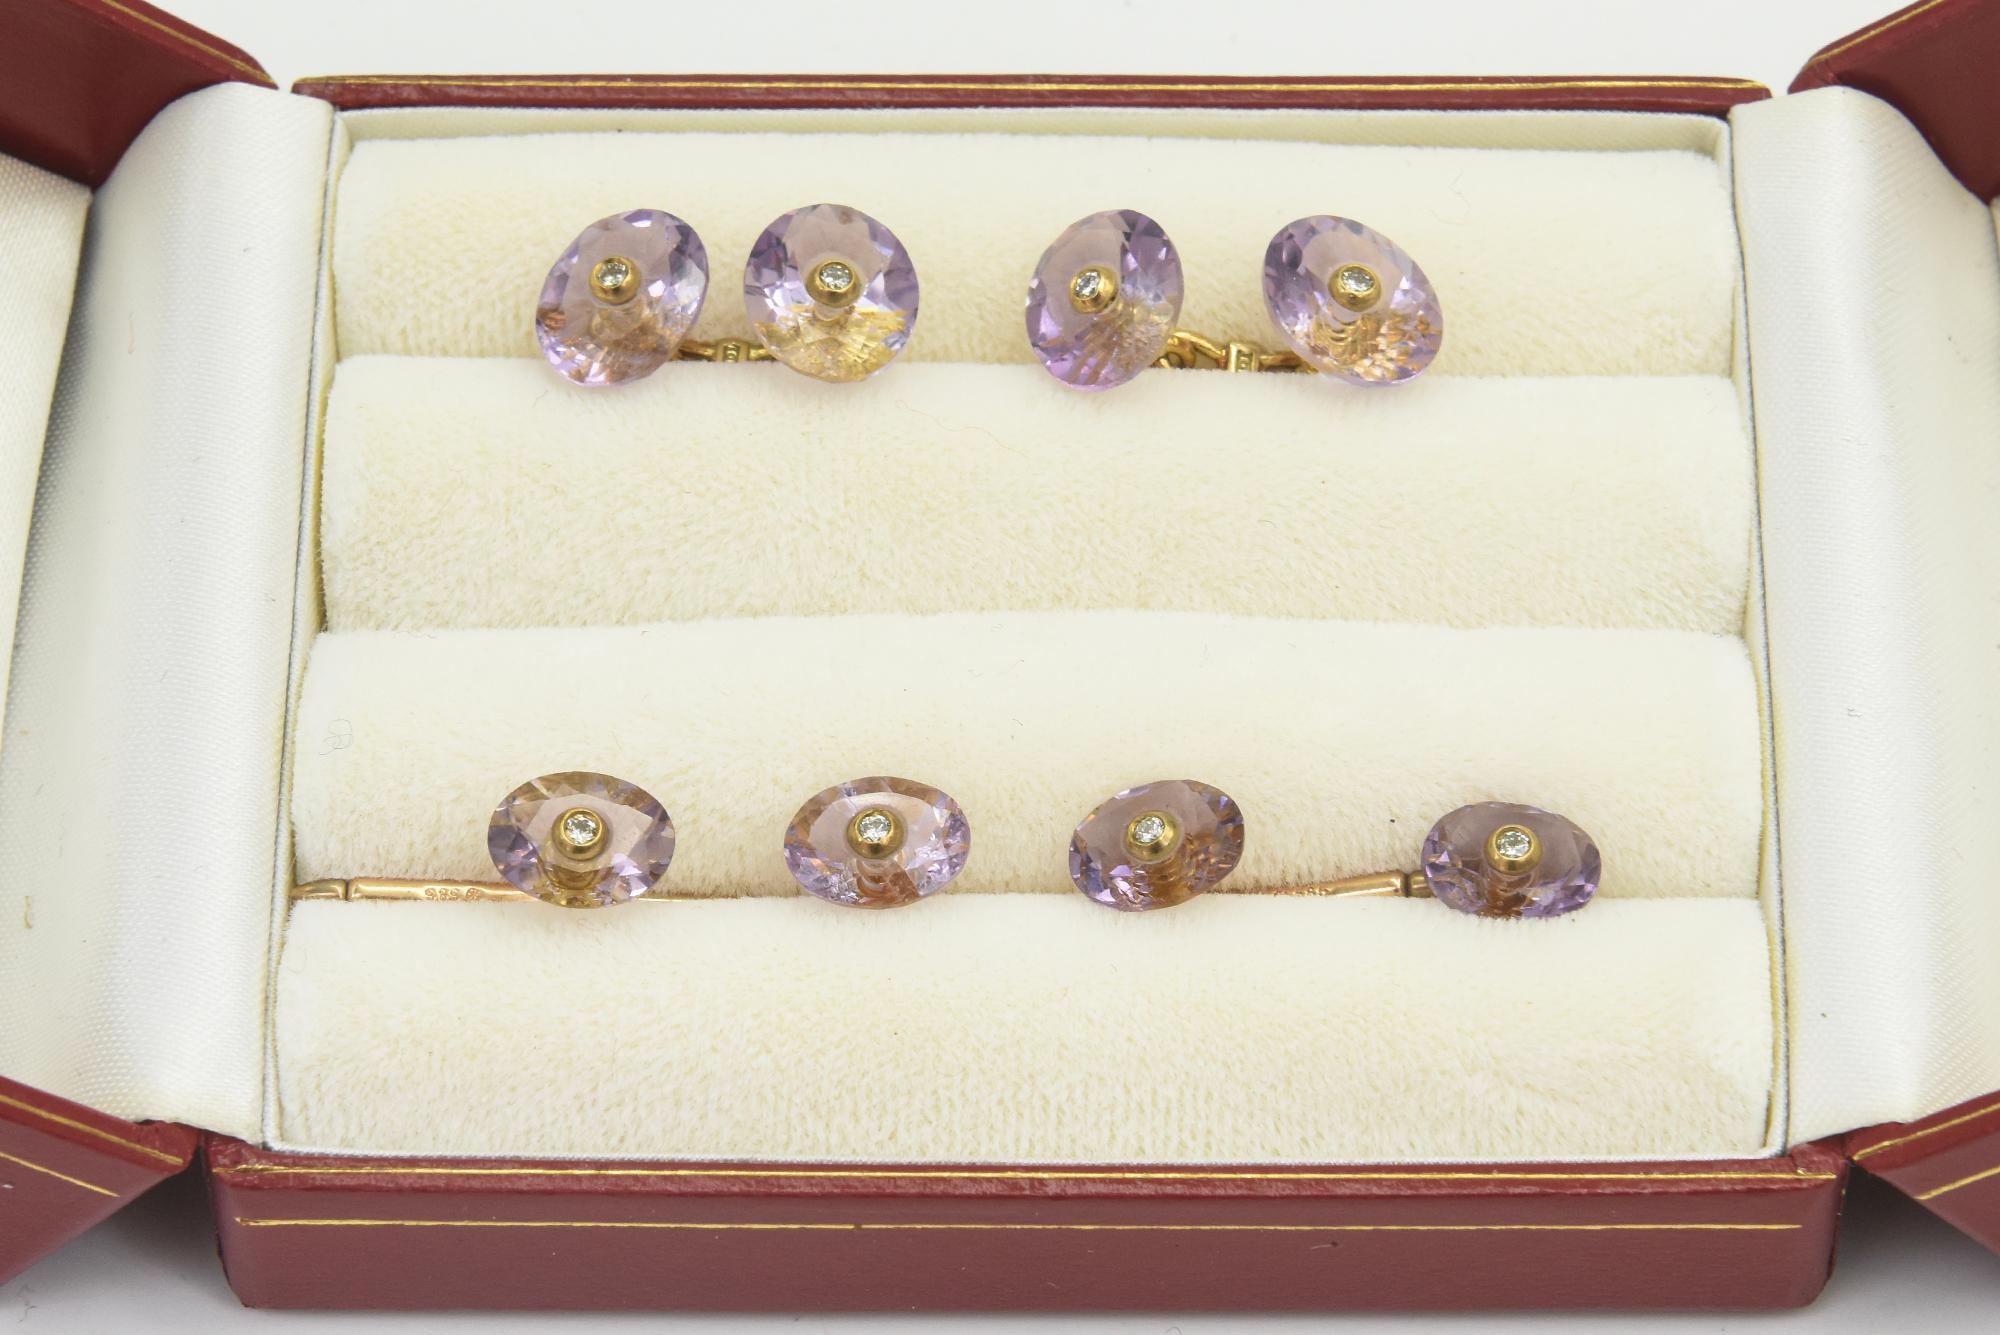 Einfach elegante facettierte ovale Amethyst mit Lünette Diamant Zentren Manschettenknöpfe und passende 4 Stud Tasten in 18k Gelbgold montiert.  Die Manschettenknöpfe sind doppelseitig mit einem 18-Karat-Steg dazwischen.  Die ovalen Abschnitte messen